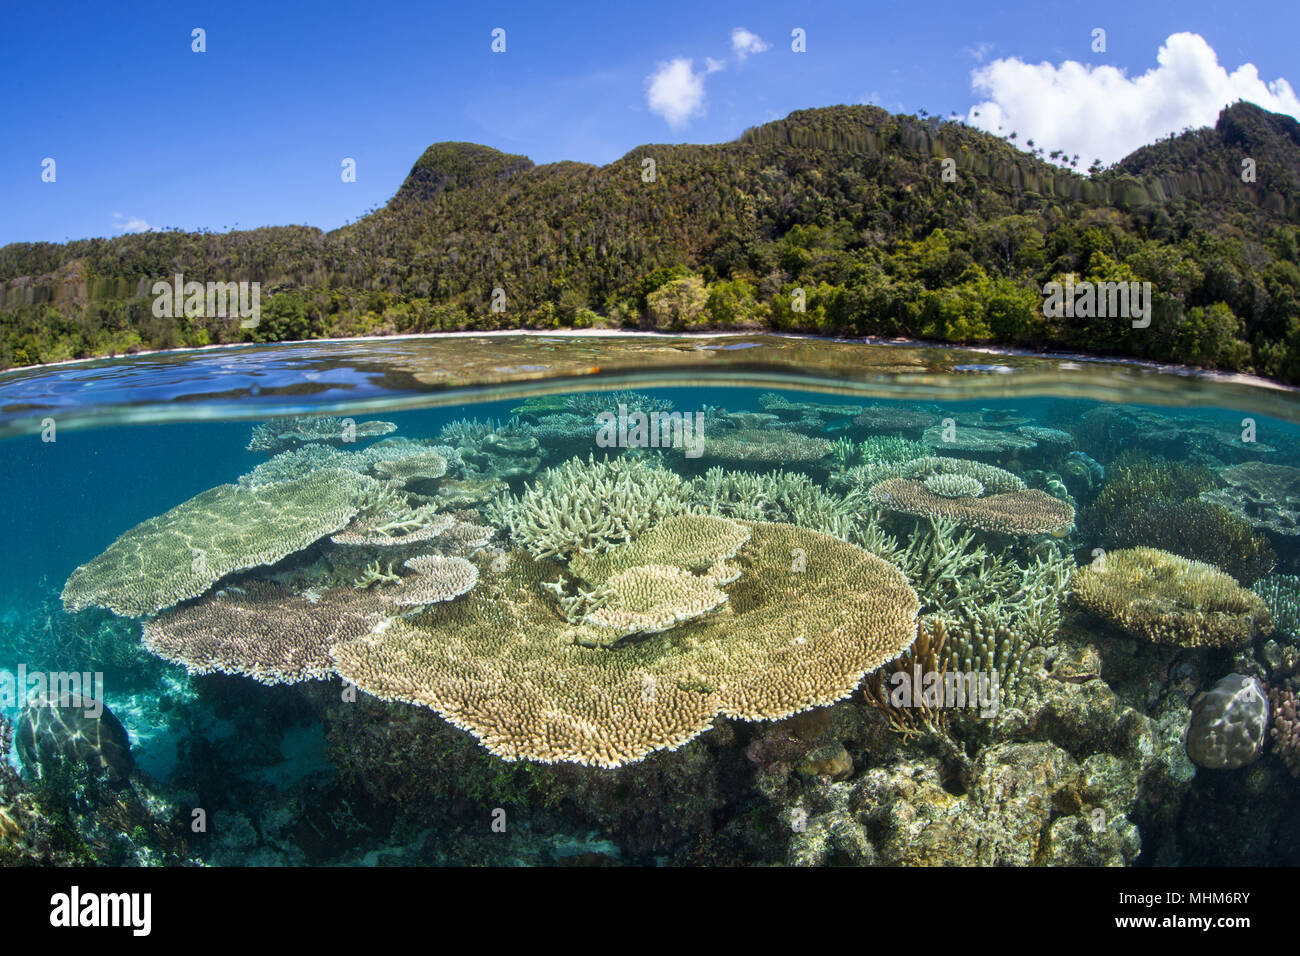 Beaux coraux bâtisseurs de croître sur un récif peu profond dans la région de Raja Ampat, en Indonésie. Cette région est connue pour ses incroyables de la biodiversité marine. Banque D'Images